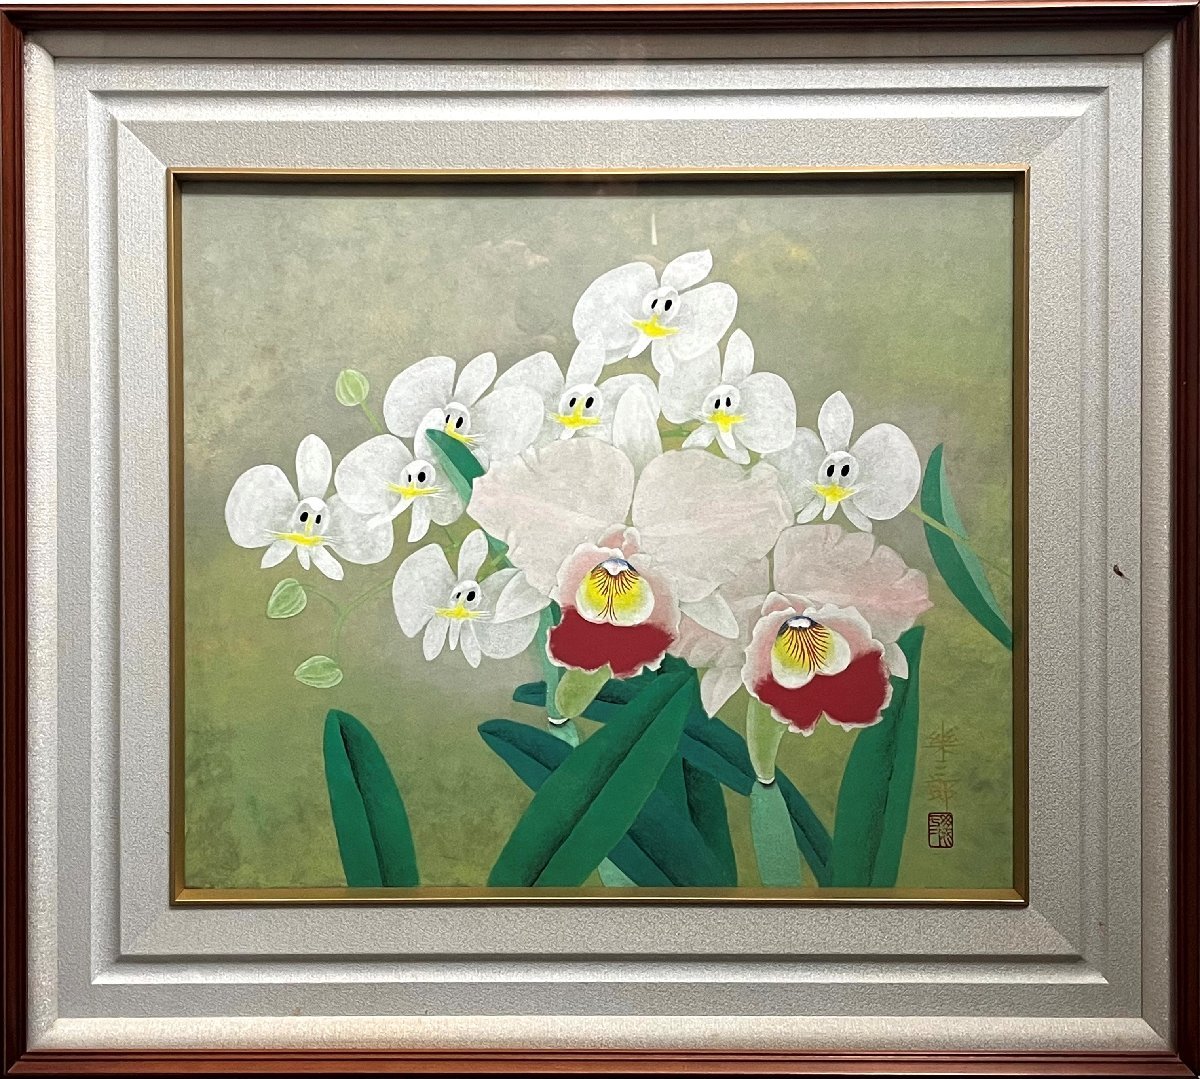 Erreur : 501, Peinture, Peinture japonaise, Fleurs et oiseaux, Faune